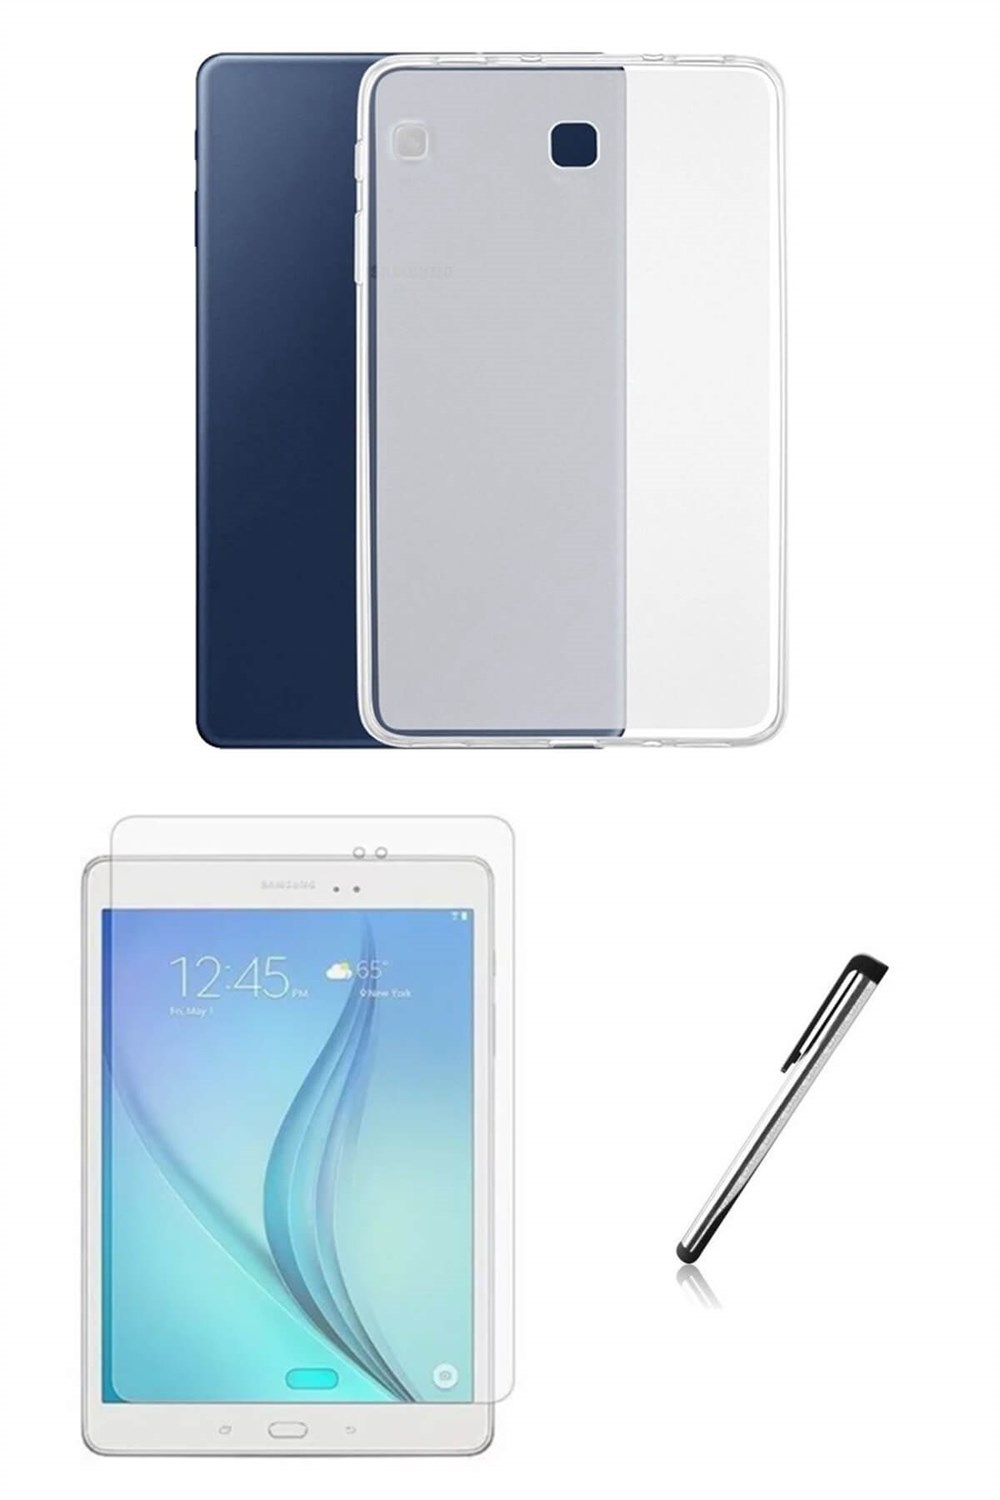 Samsung Galaxy Tab A SM-T550 Silikon Tablet Kılıfı Seti (9.7 inç) I  Esepetim.com